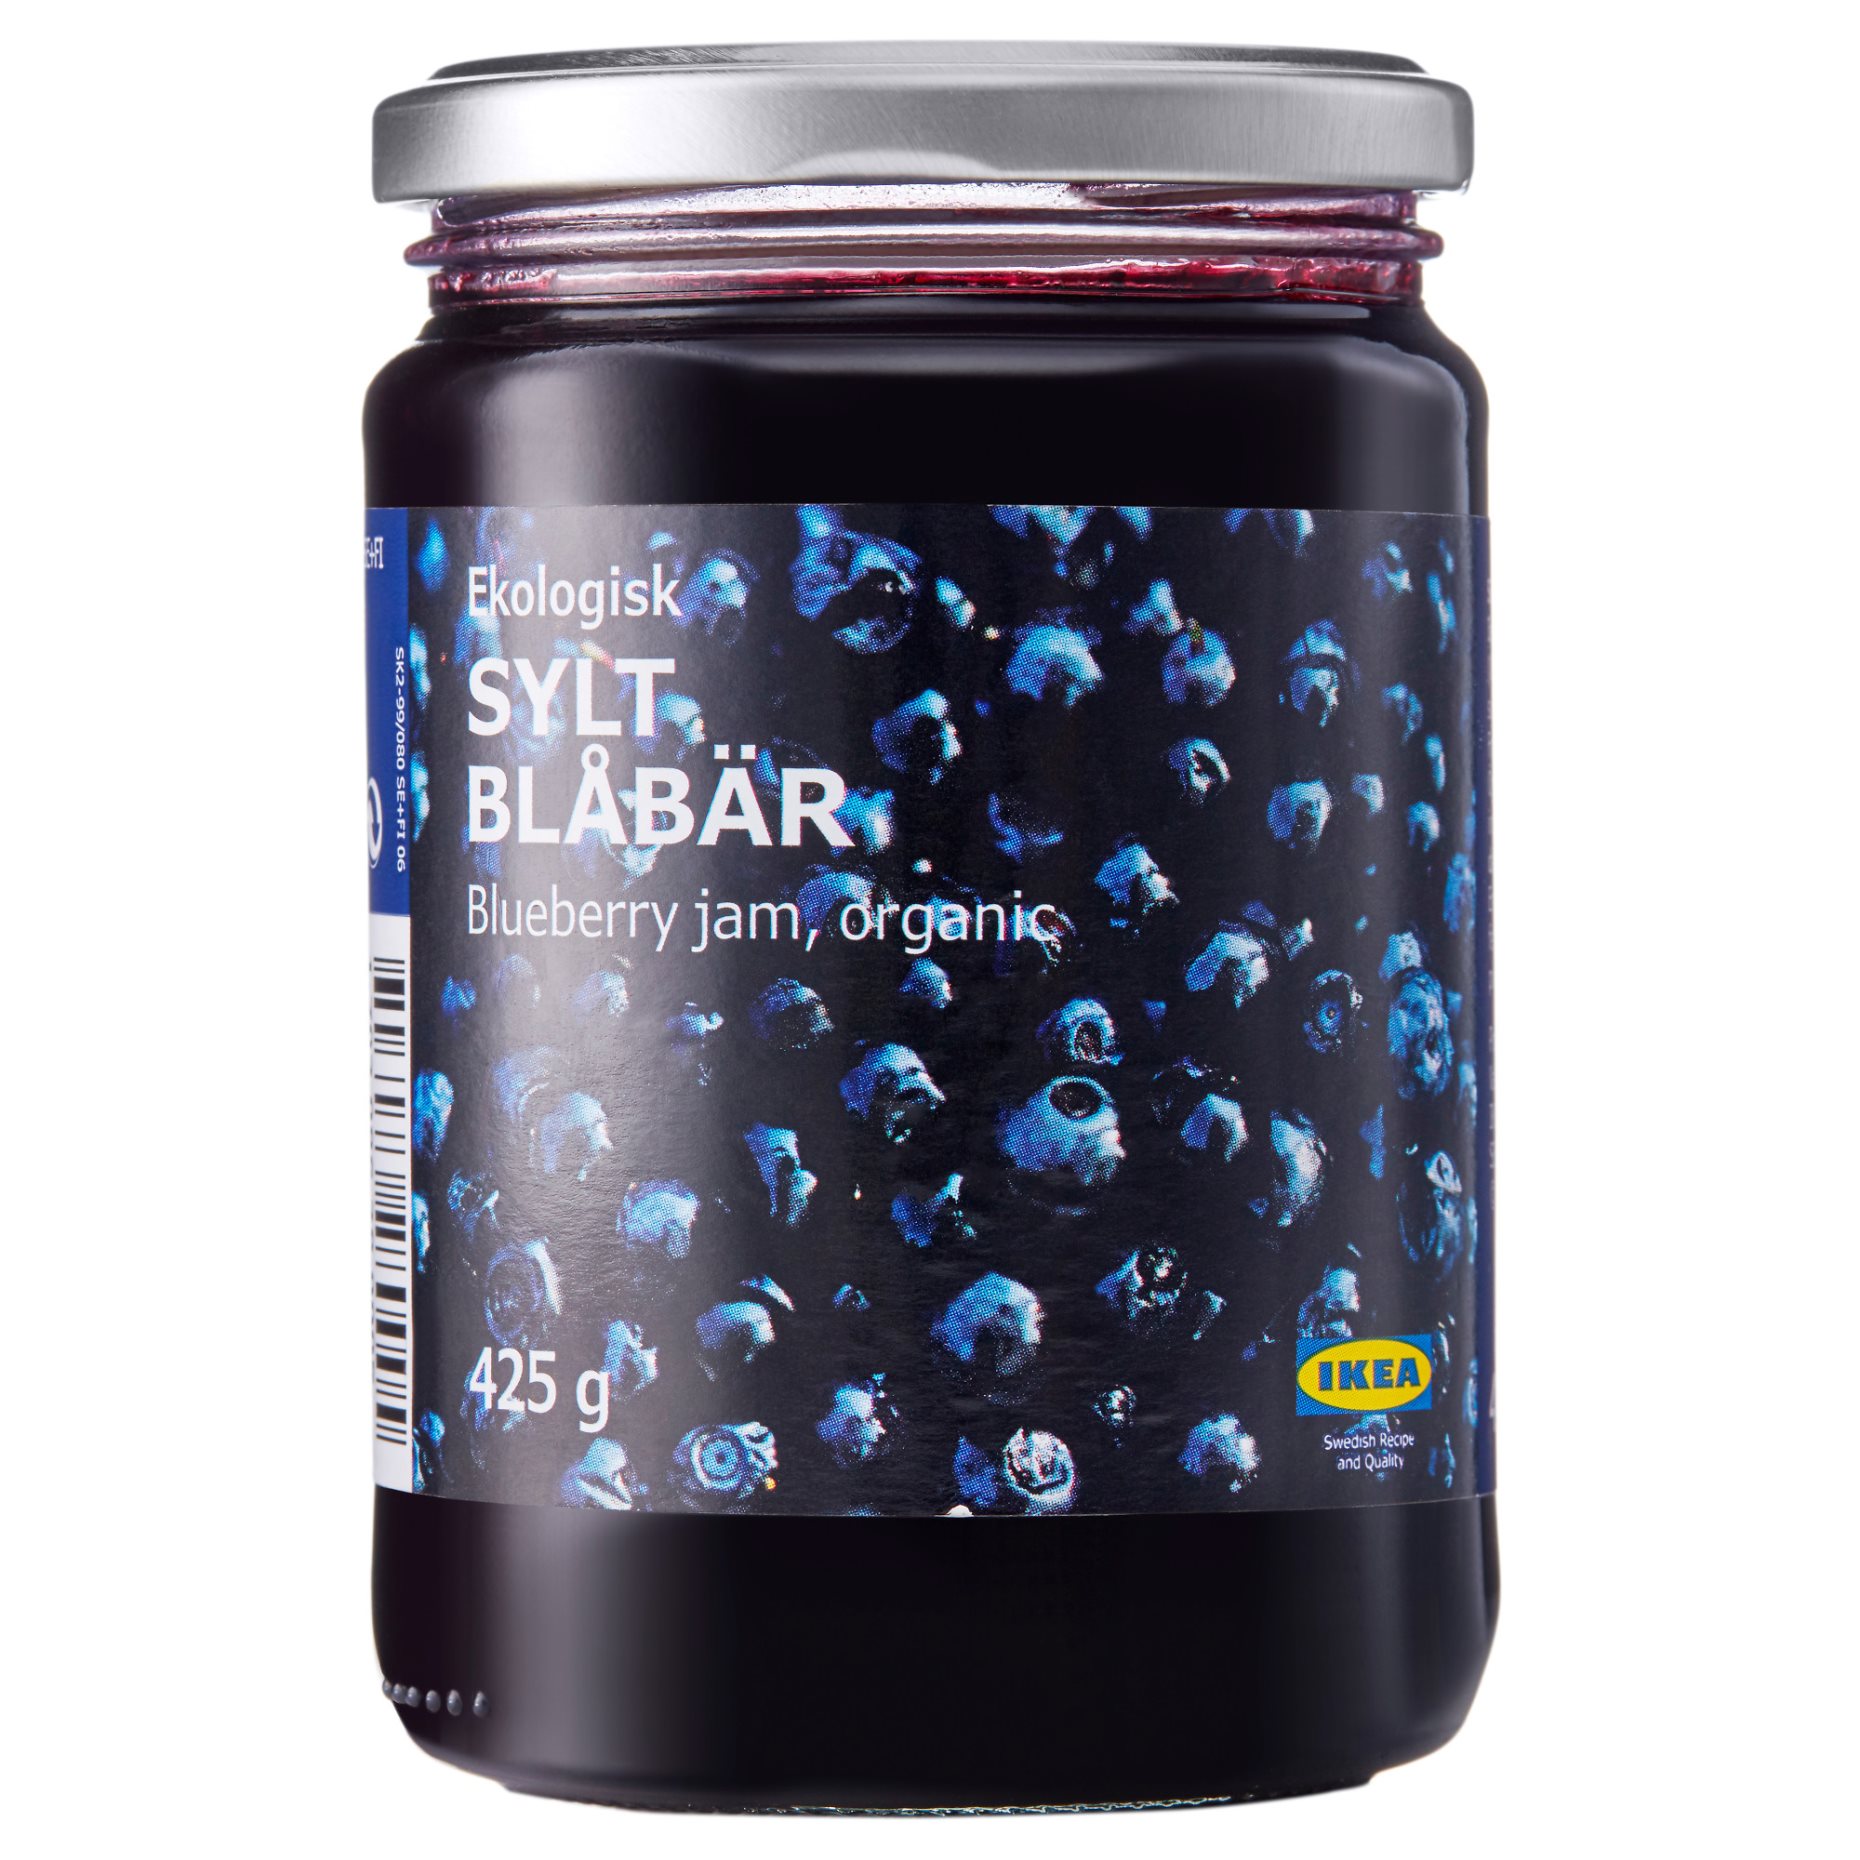 SYLT BLABAR, blueberry jam organic, 425 g, 703.086.28